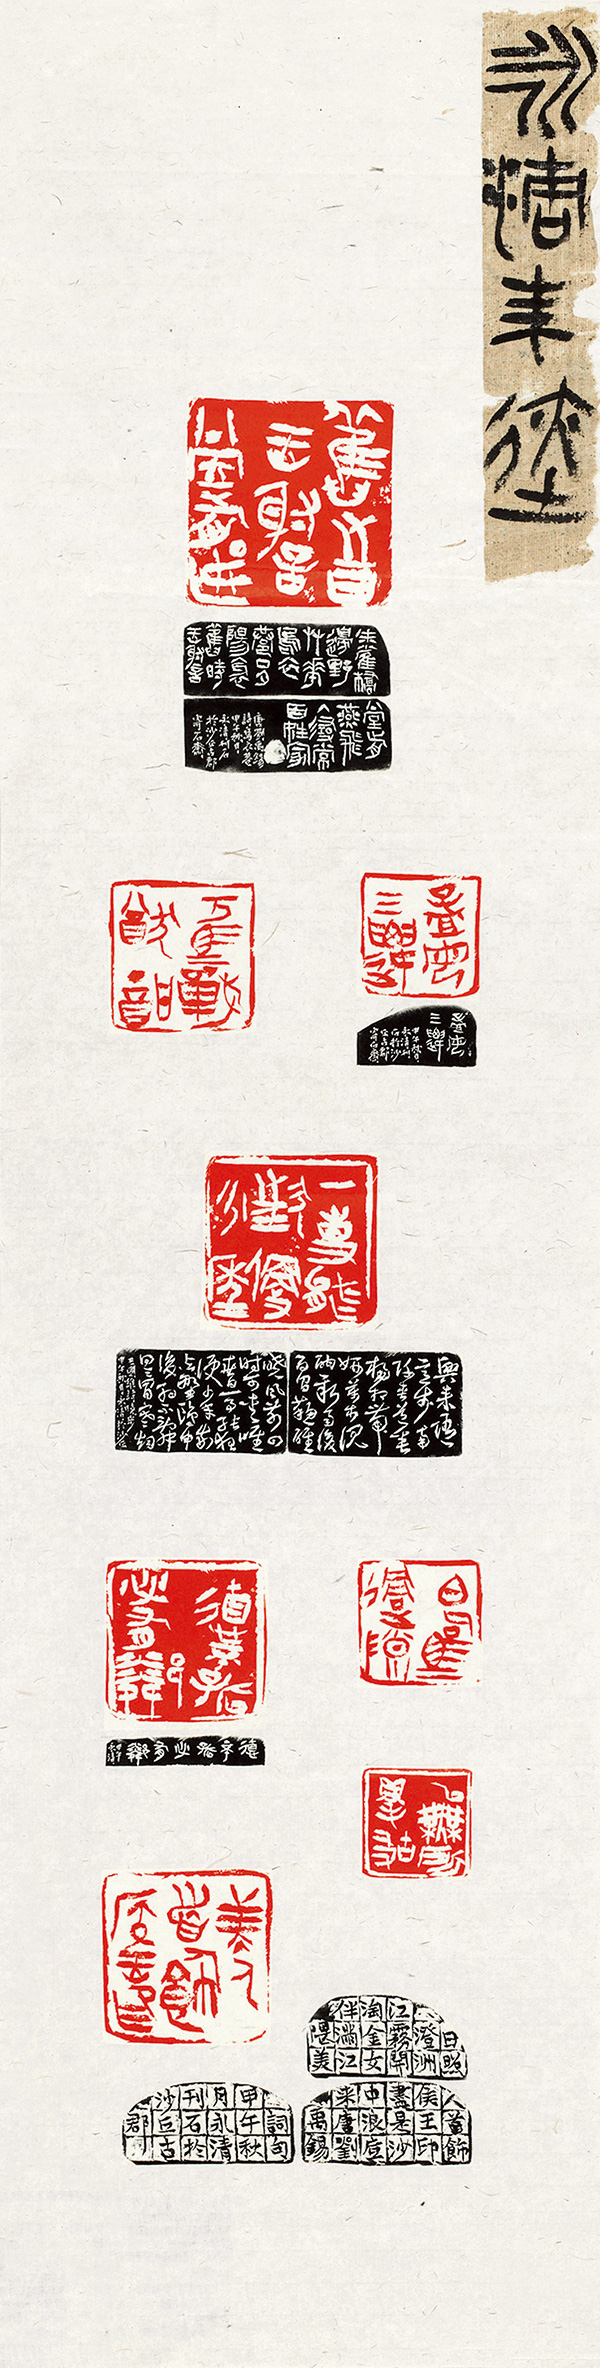 刘永清 篆刻印屏 137×35cm